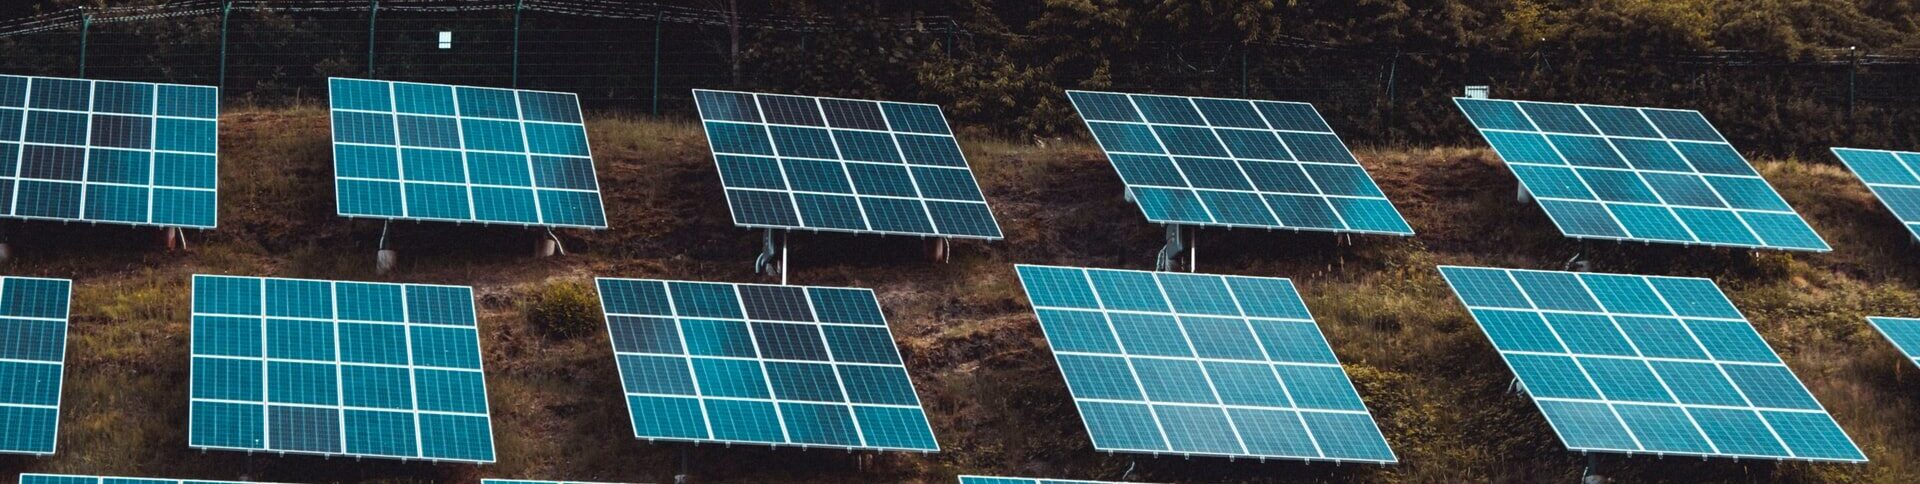 paineis solares - Energia solar: a maior tendência na redução de custos e geração de energia limpa